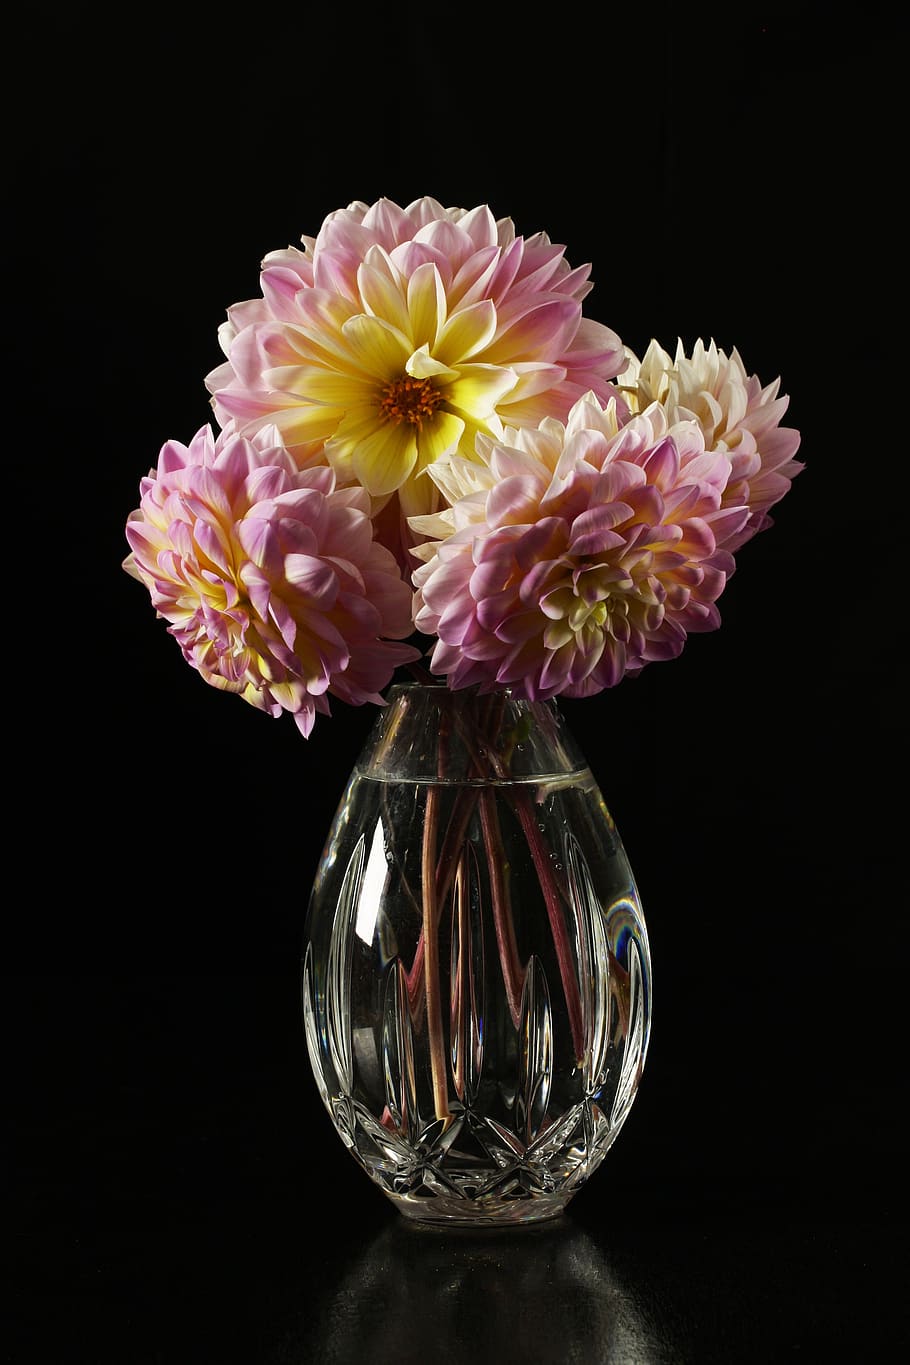 dahlias, dahlias in a vase, flowers, flowers in a vase, bloom, garden, pink, flower, flowering plant, indoors